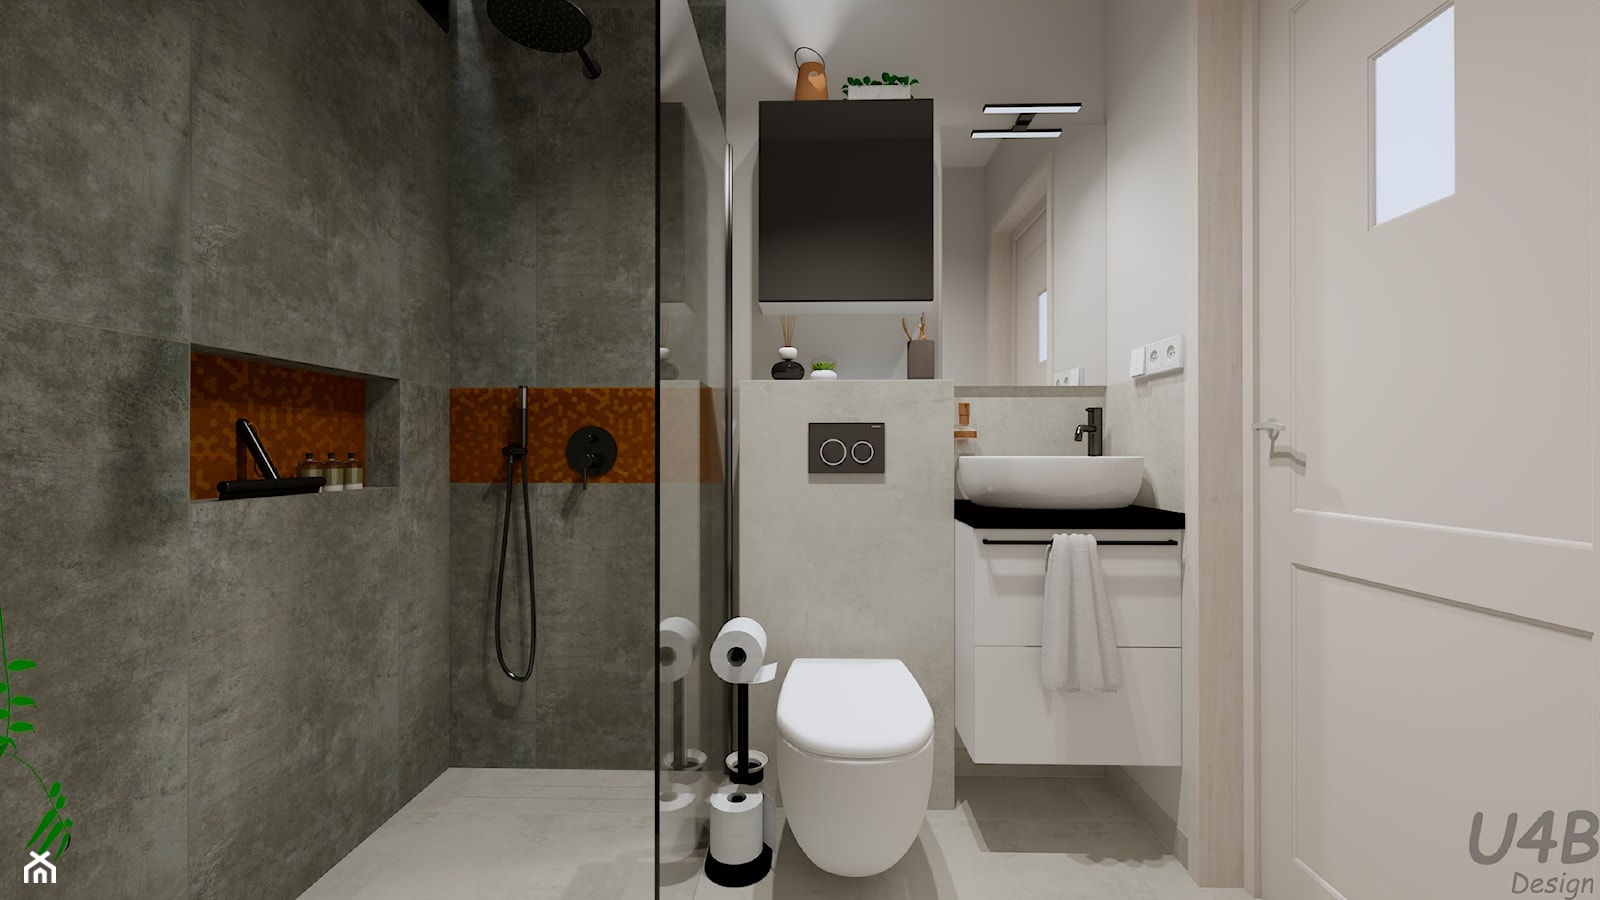 Mała łazienka w domu - zdjęcie od U4B Design Karolina Bonk - Homebook